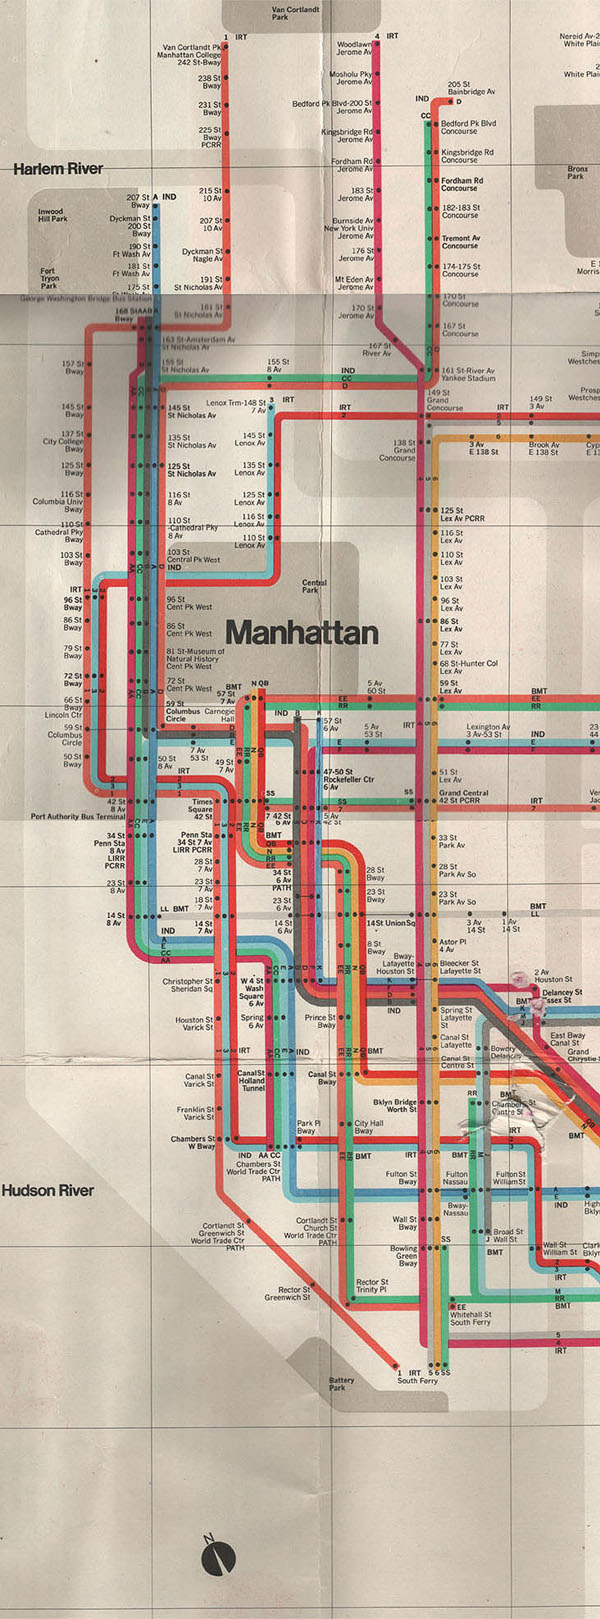 Detailed subway map of Manhattan.